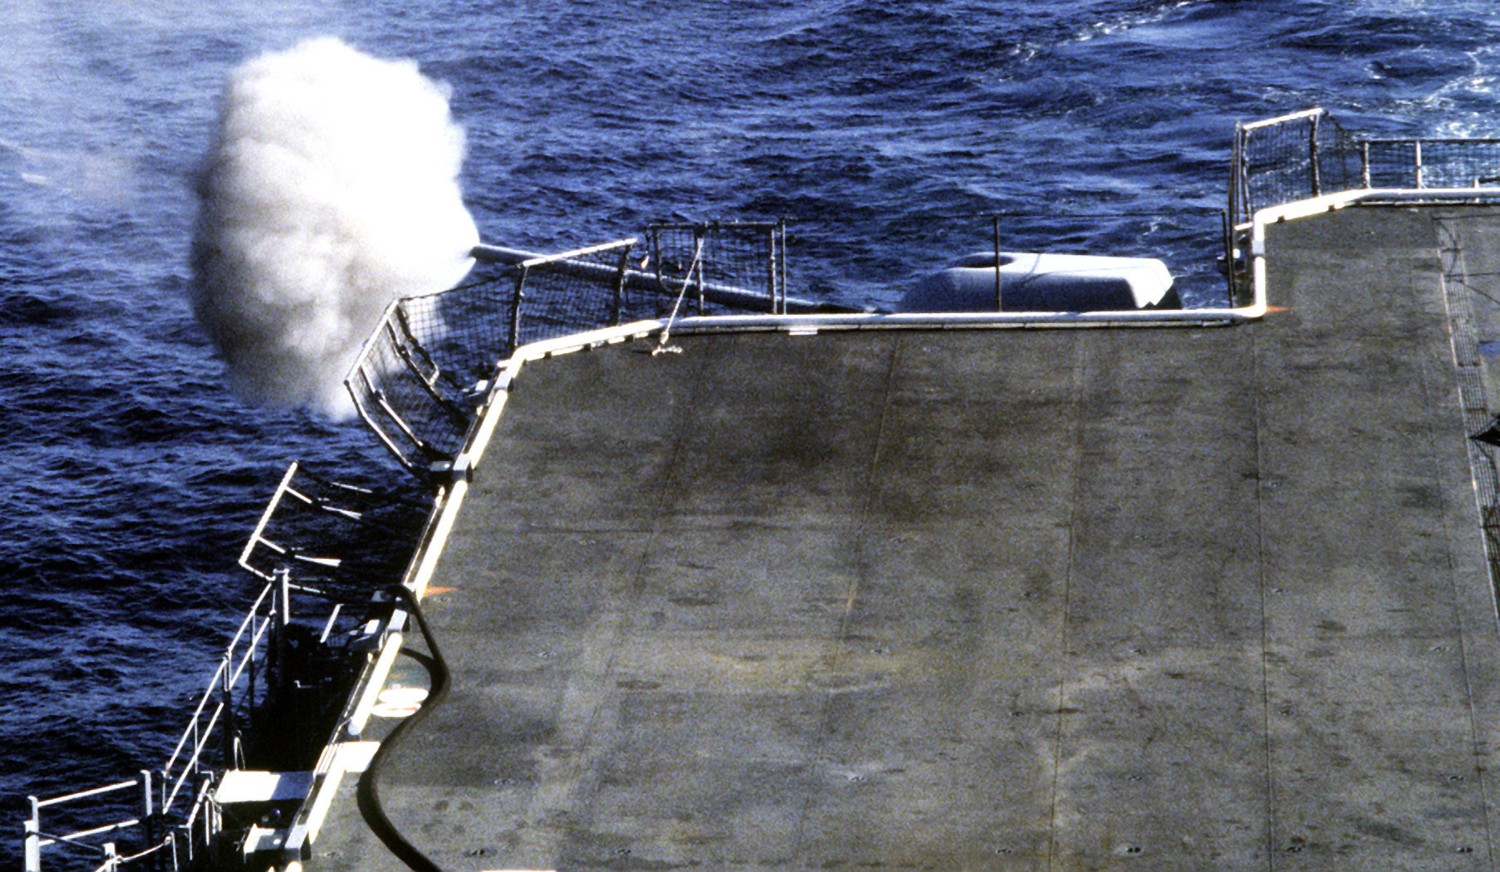 lha-4 uss nassau tarawa class amphibious assault ship us navy 76 mk.45 gun fire